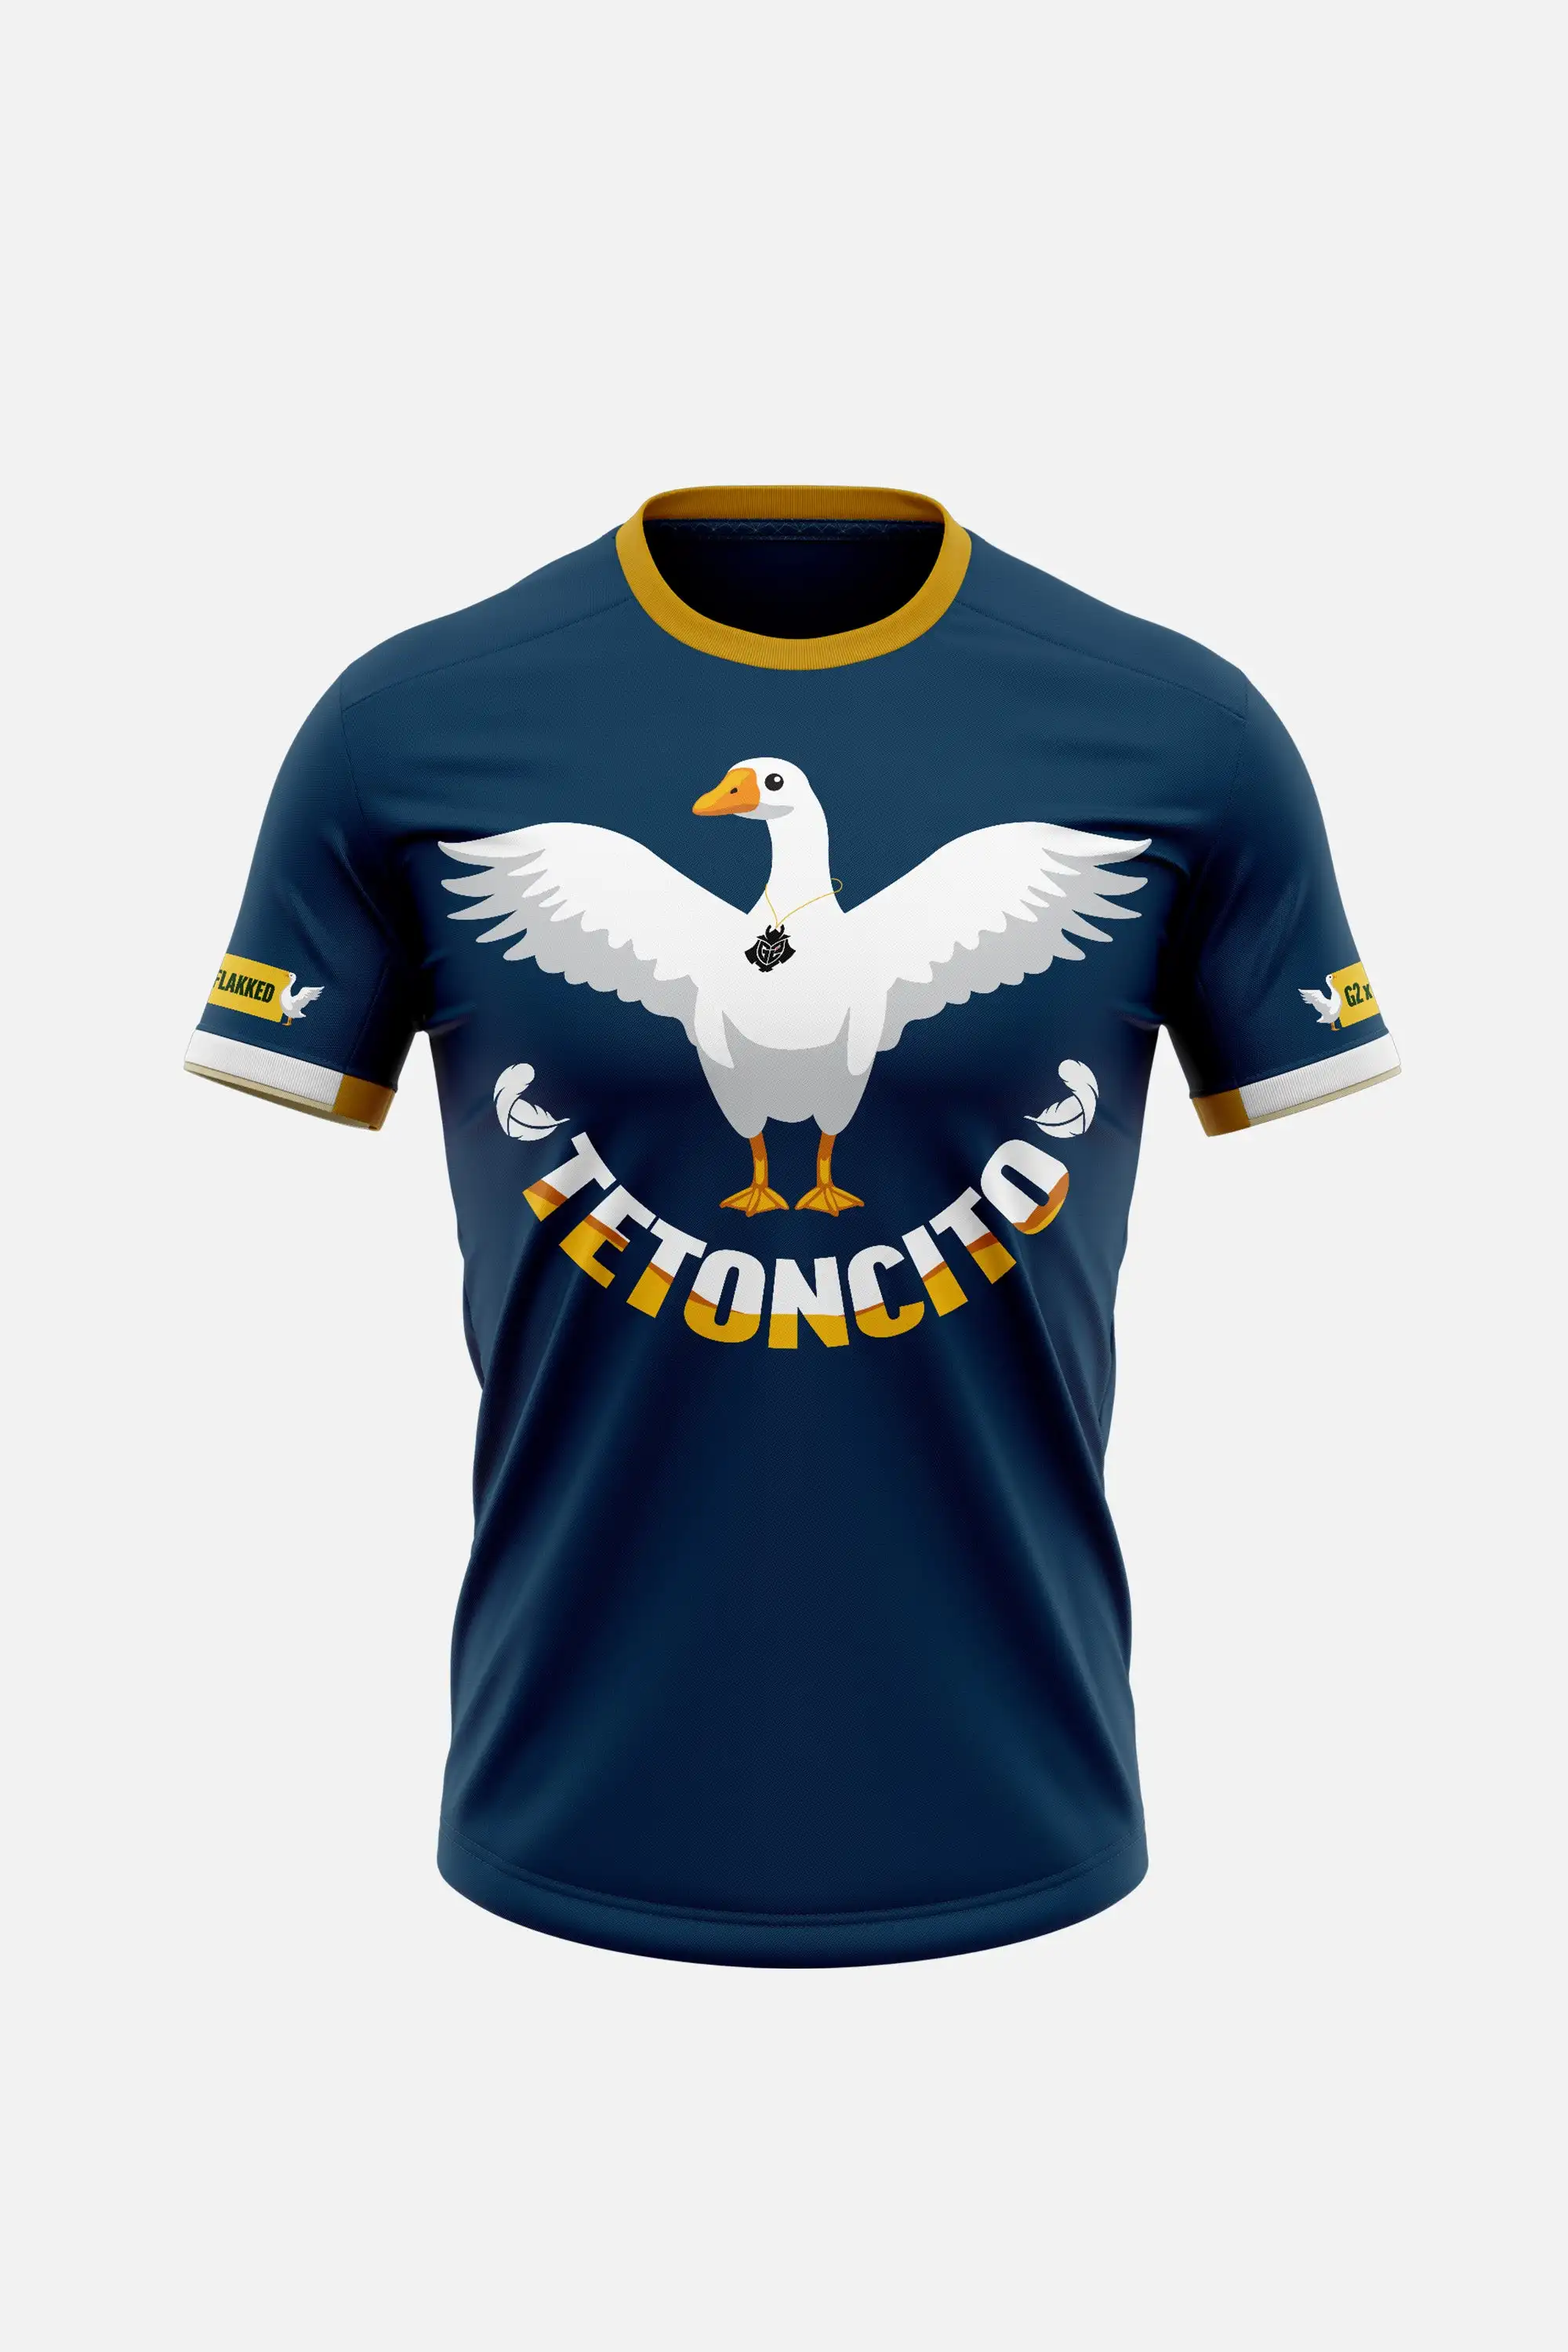 

T-Shirt à manches courtes pour les Fans de l'équipe e-sports, confortable, pour l'été, nouvelle collection 2022